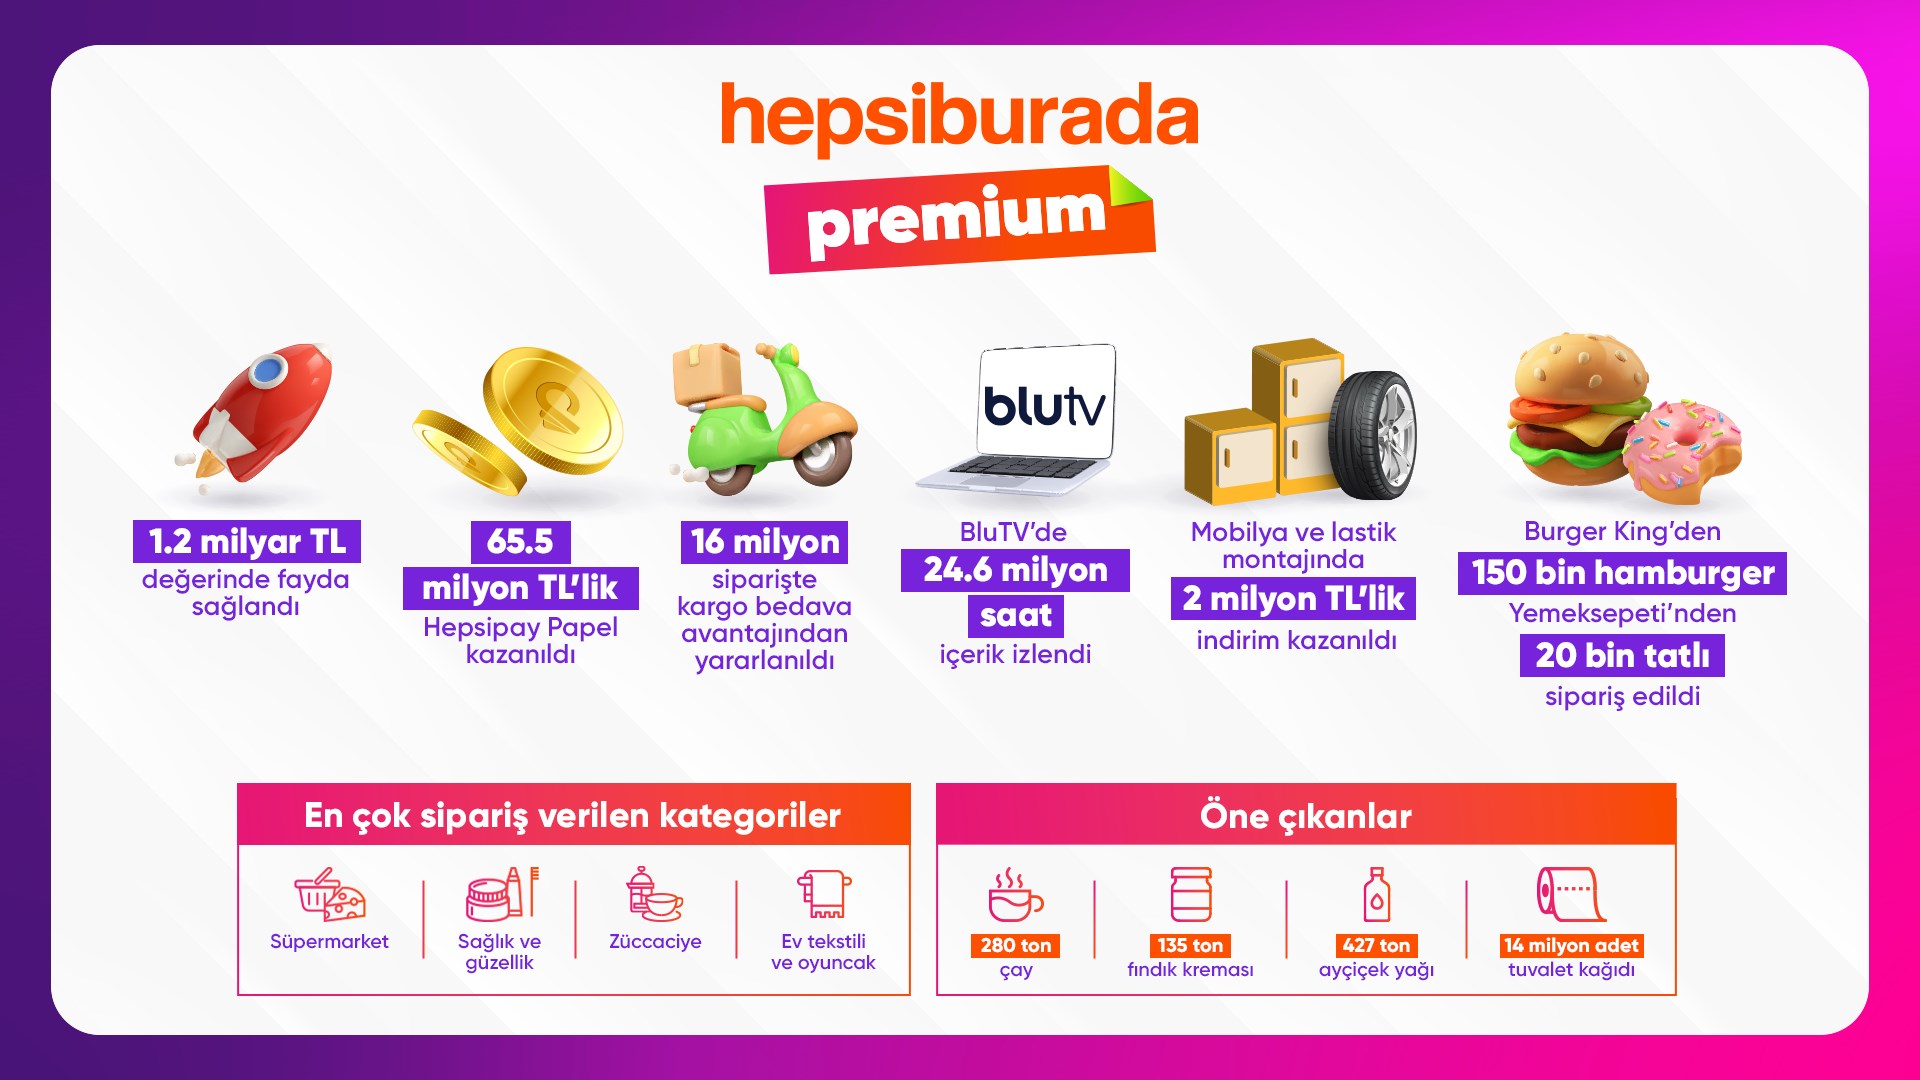 Hepsiburada Premium 1 milyon üyeye ulaştı